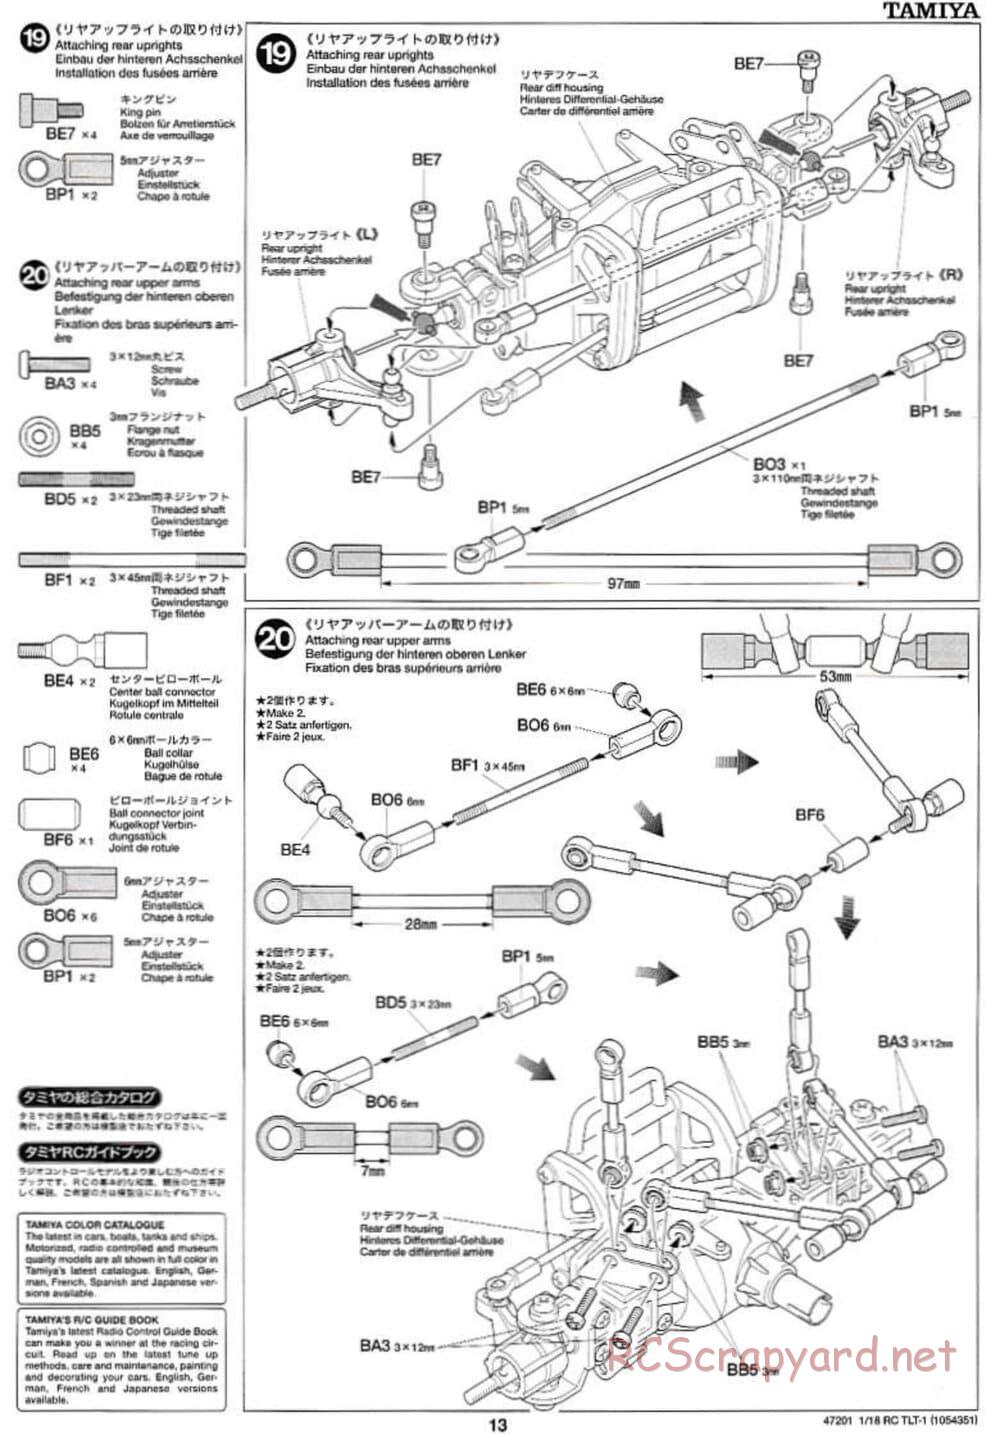 Tamiya - Rock Buster - TLT-1 Chassis - Manual - Page 13